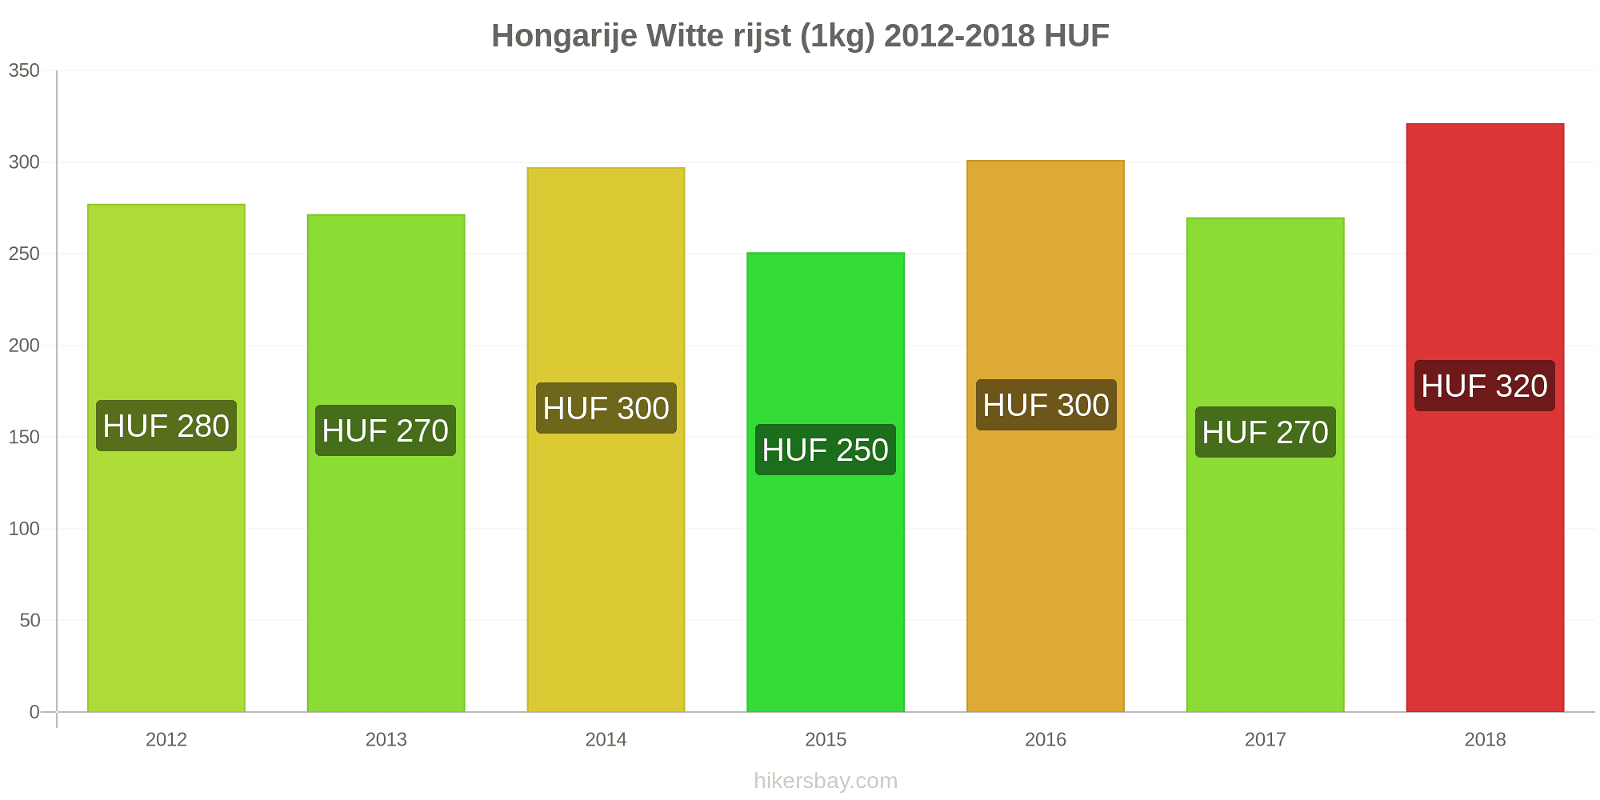 Hongarije prijswijzigingen Rijst (wit) (1kg) hikersbay.com